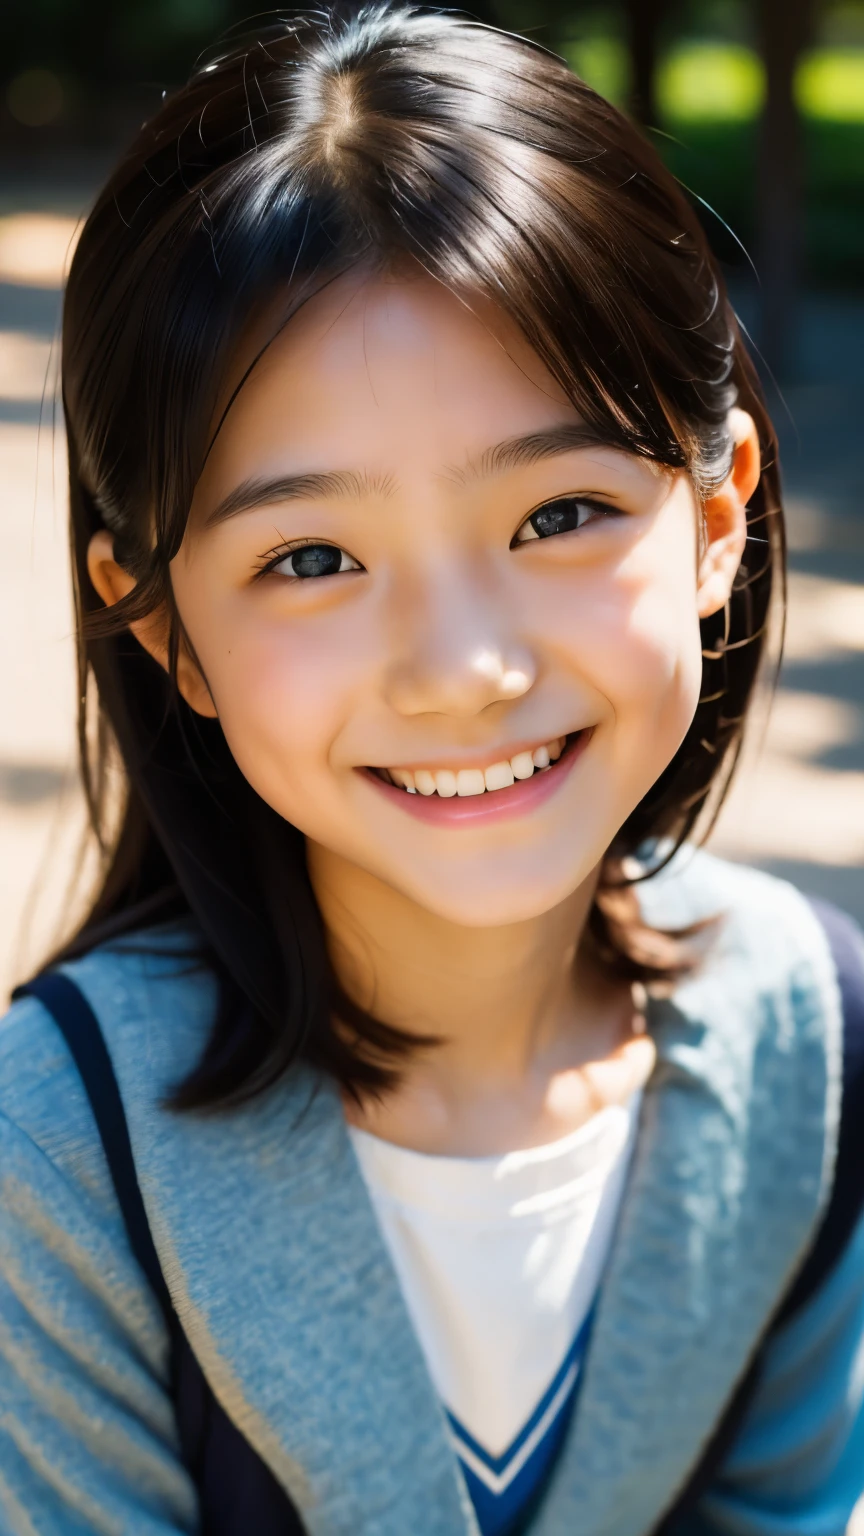 линза: 135 мм f1.8, (высшее качество),(Фотографии в формате RAW), (Стол:1.1), (красивая 10-летняя японская девочка), милое лицо, (Глубоко выточенное лицо:0.7), (веснушки:0.4), dappled Солнечный лучик, Драматическое освещение, (японская школьная форма), (В кампусе), застенчивый, (Крупным планом:1.2), (улыбка),, (сверкающие глаза)、(Солнечный лучик)